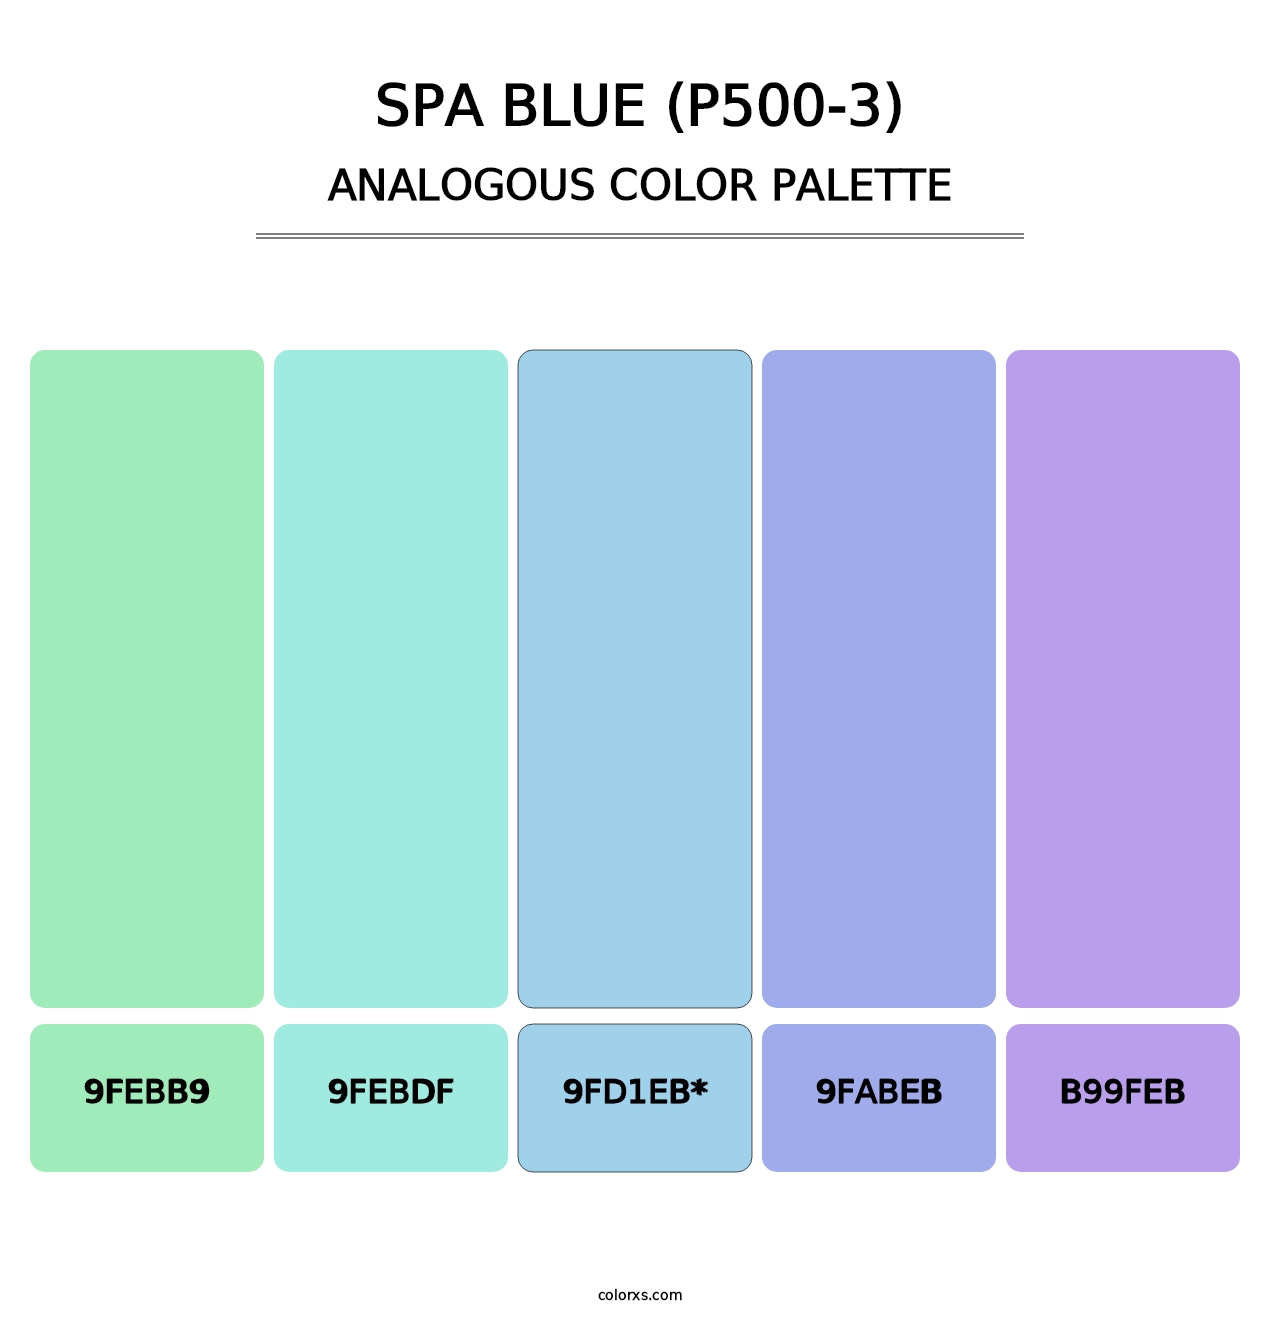 Spa Blue (P500-3) - Analogous Color Palette